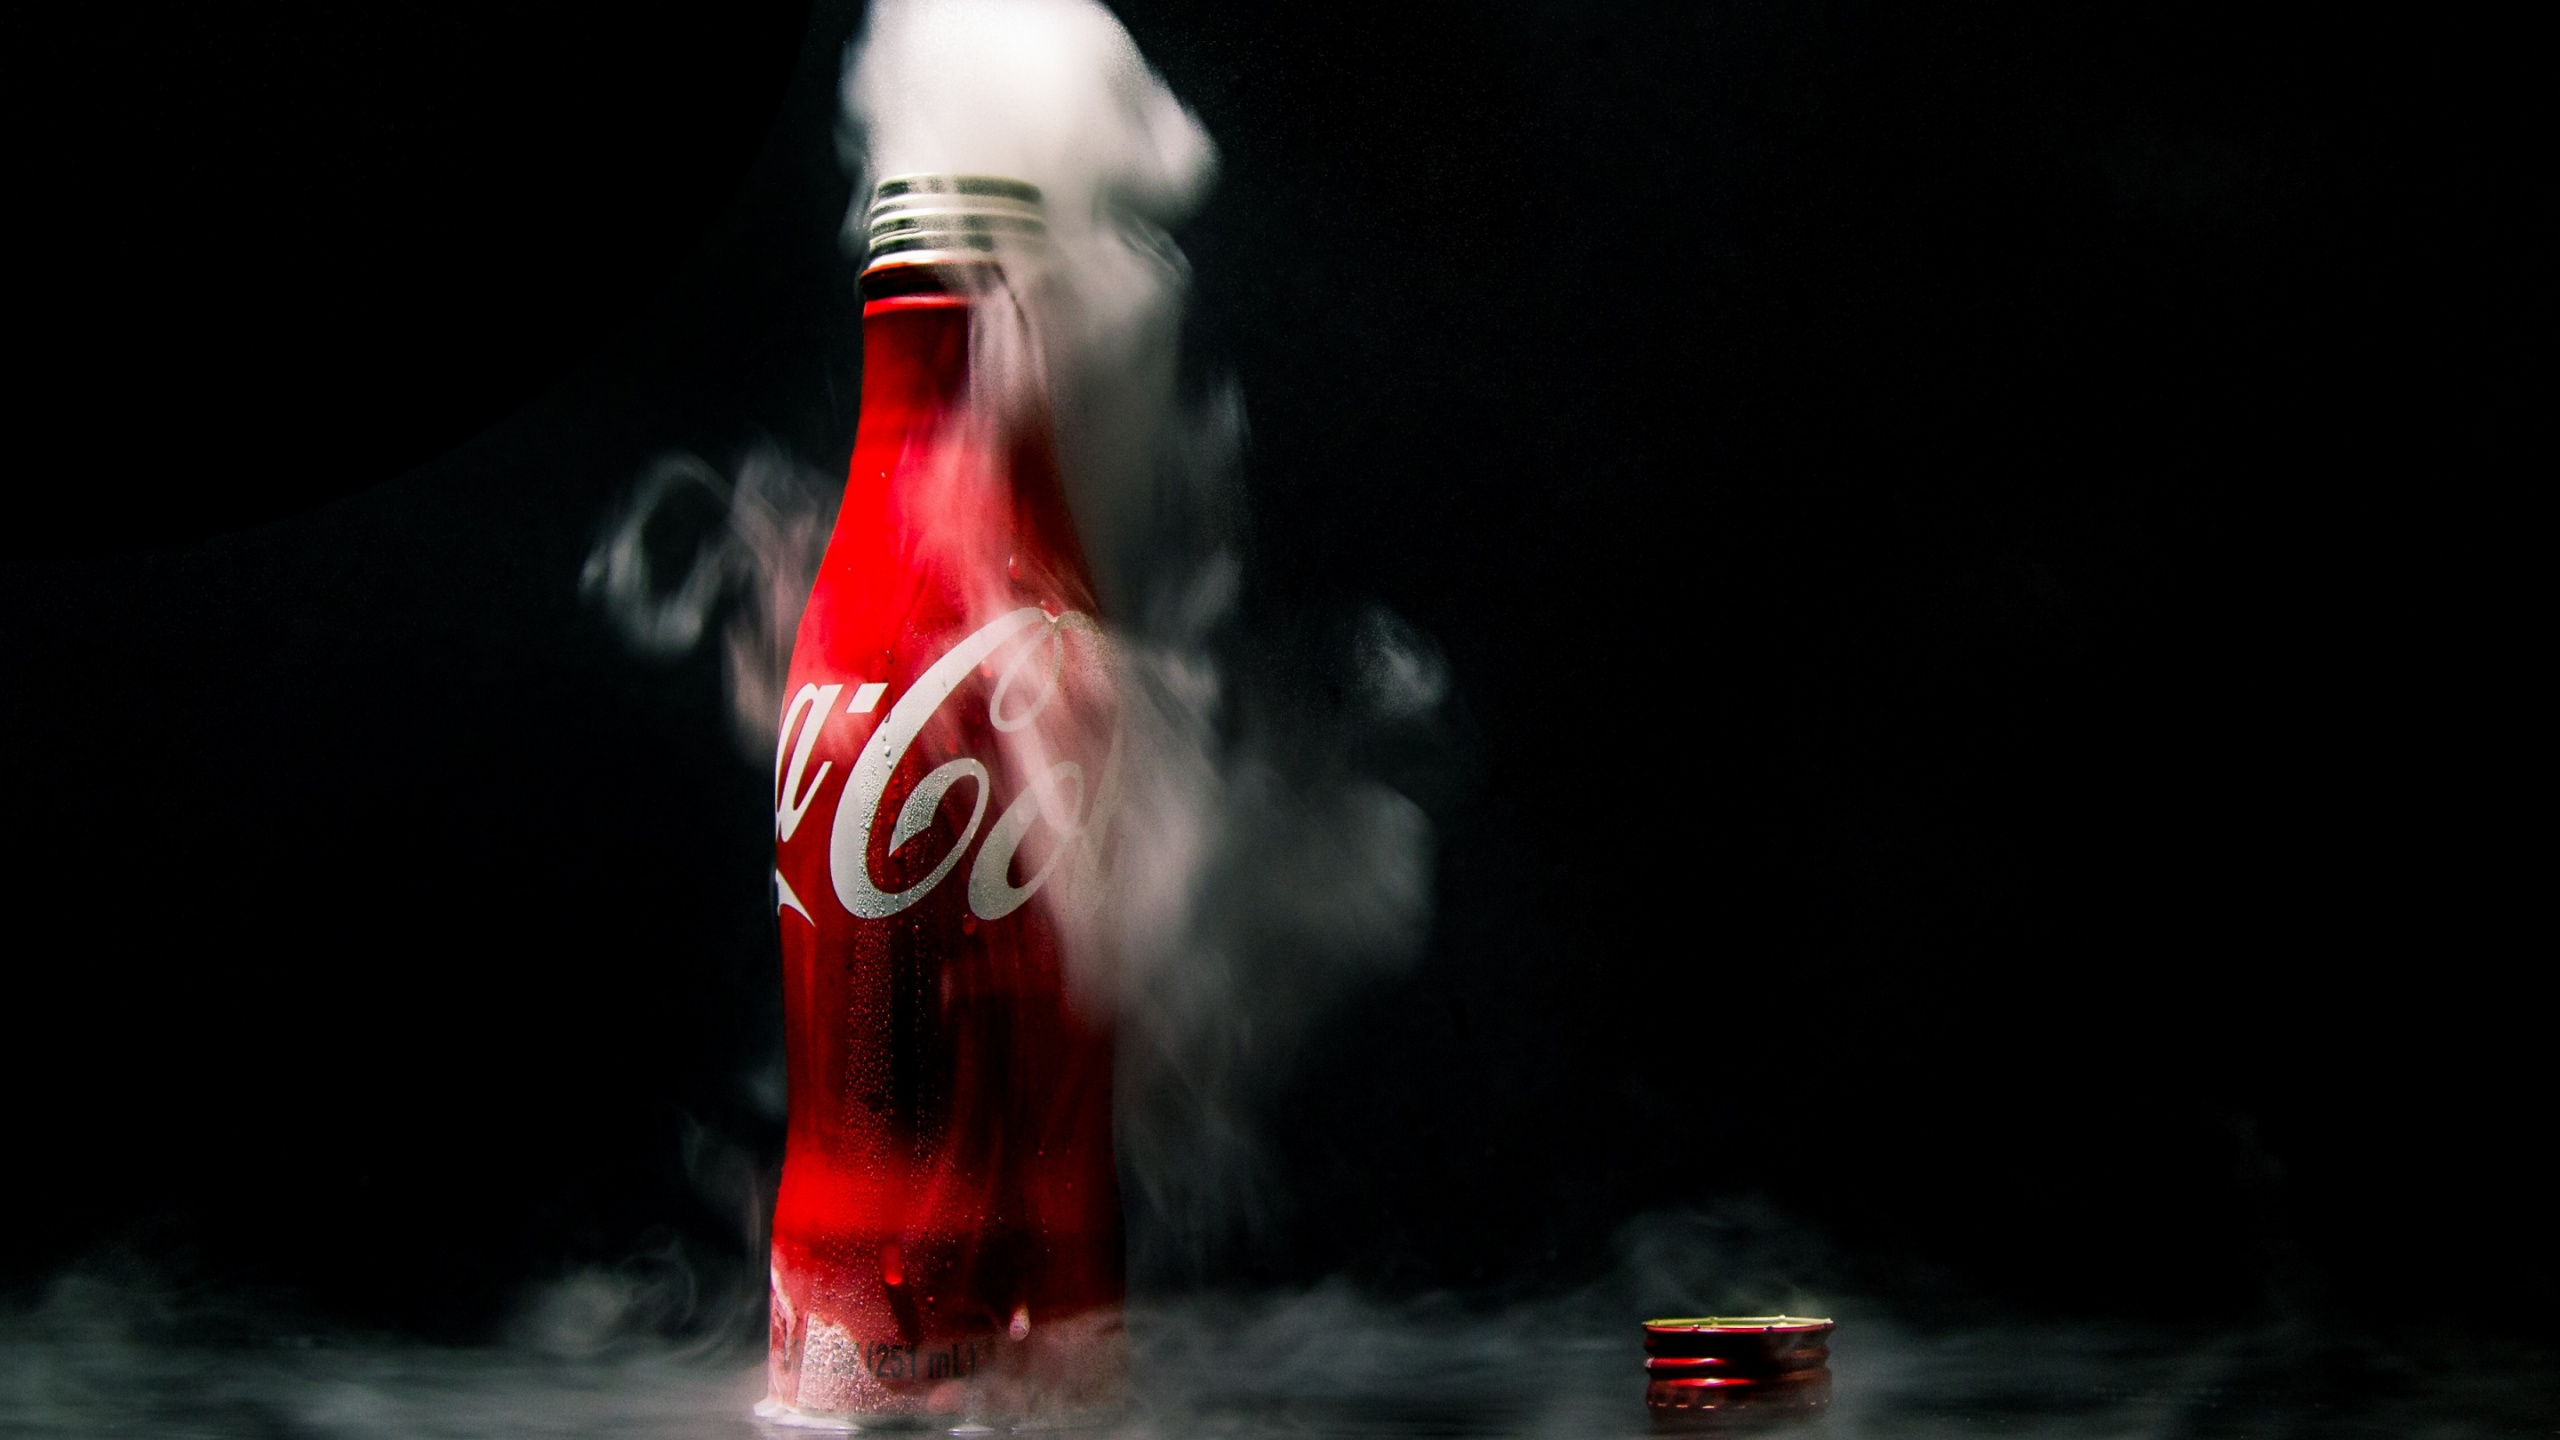 Bouteille de Coca Cola Sur L'eau. Wallpaper in 2560x1440 Resolution